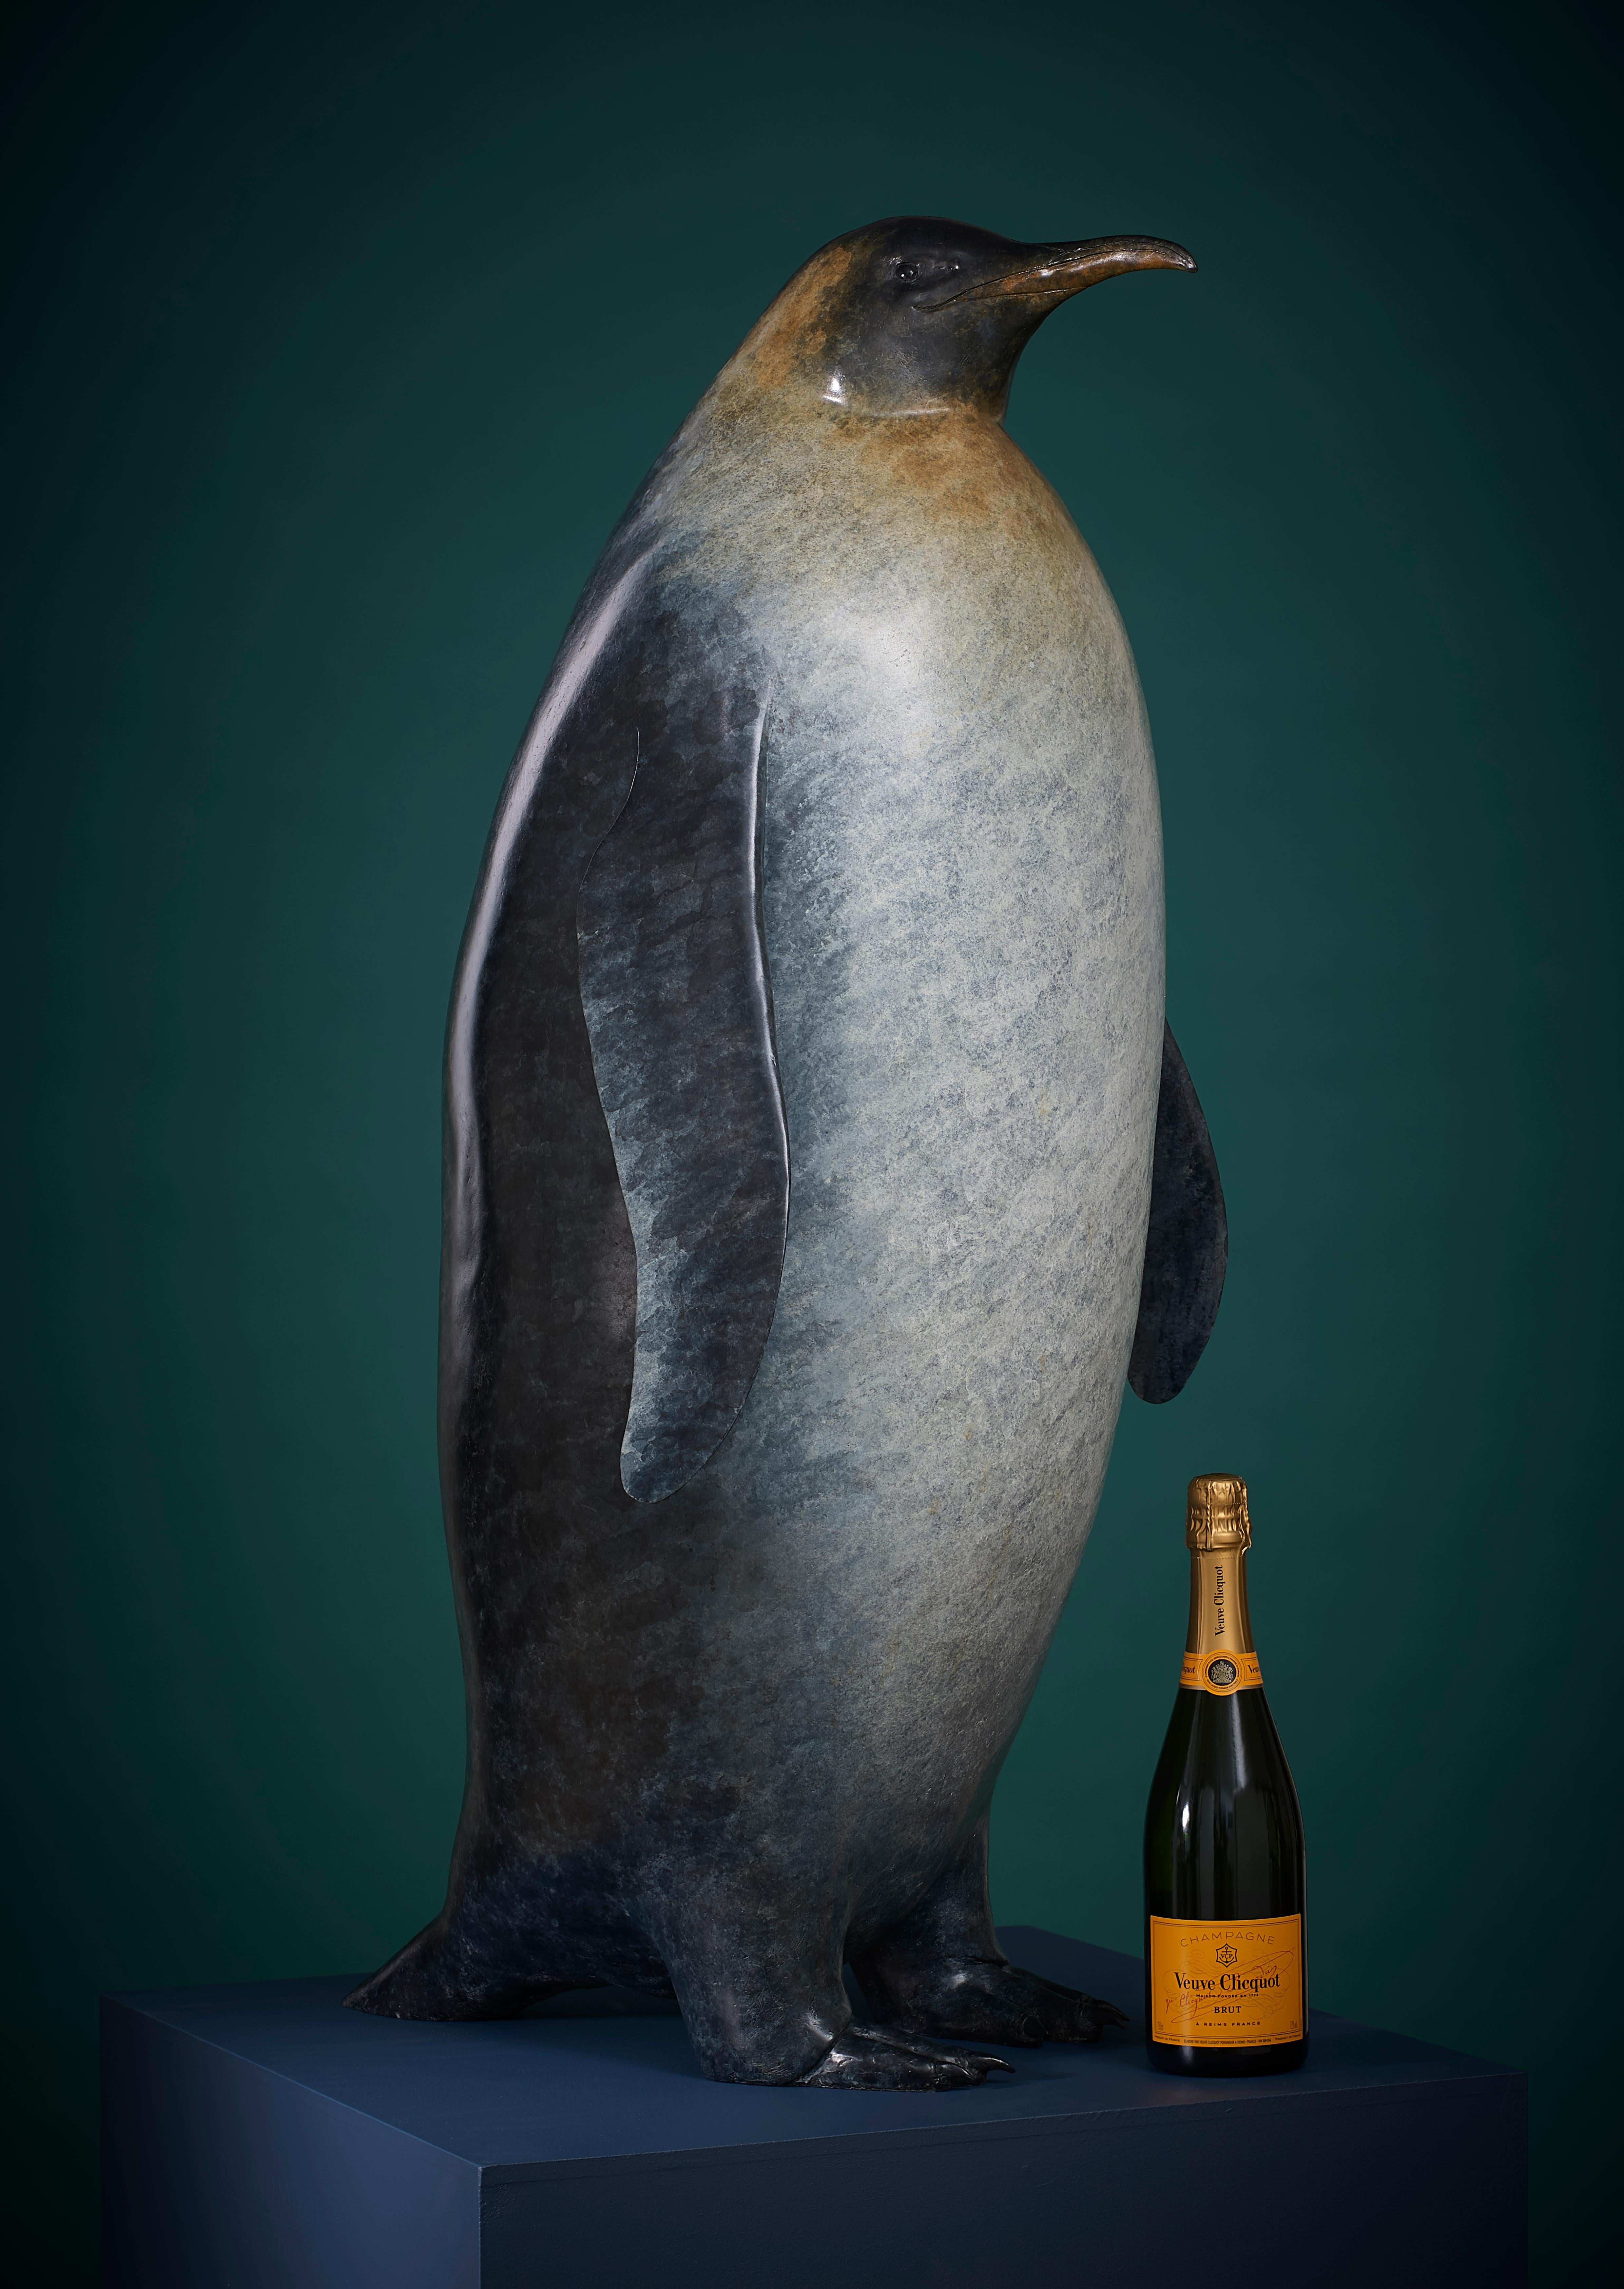 Richard Smith b.1955 Still-Life Sculpture - 'The Emperor' Contemporary Bronze Animal Sculpture of an Emperor Penguin